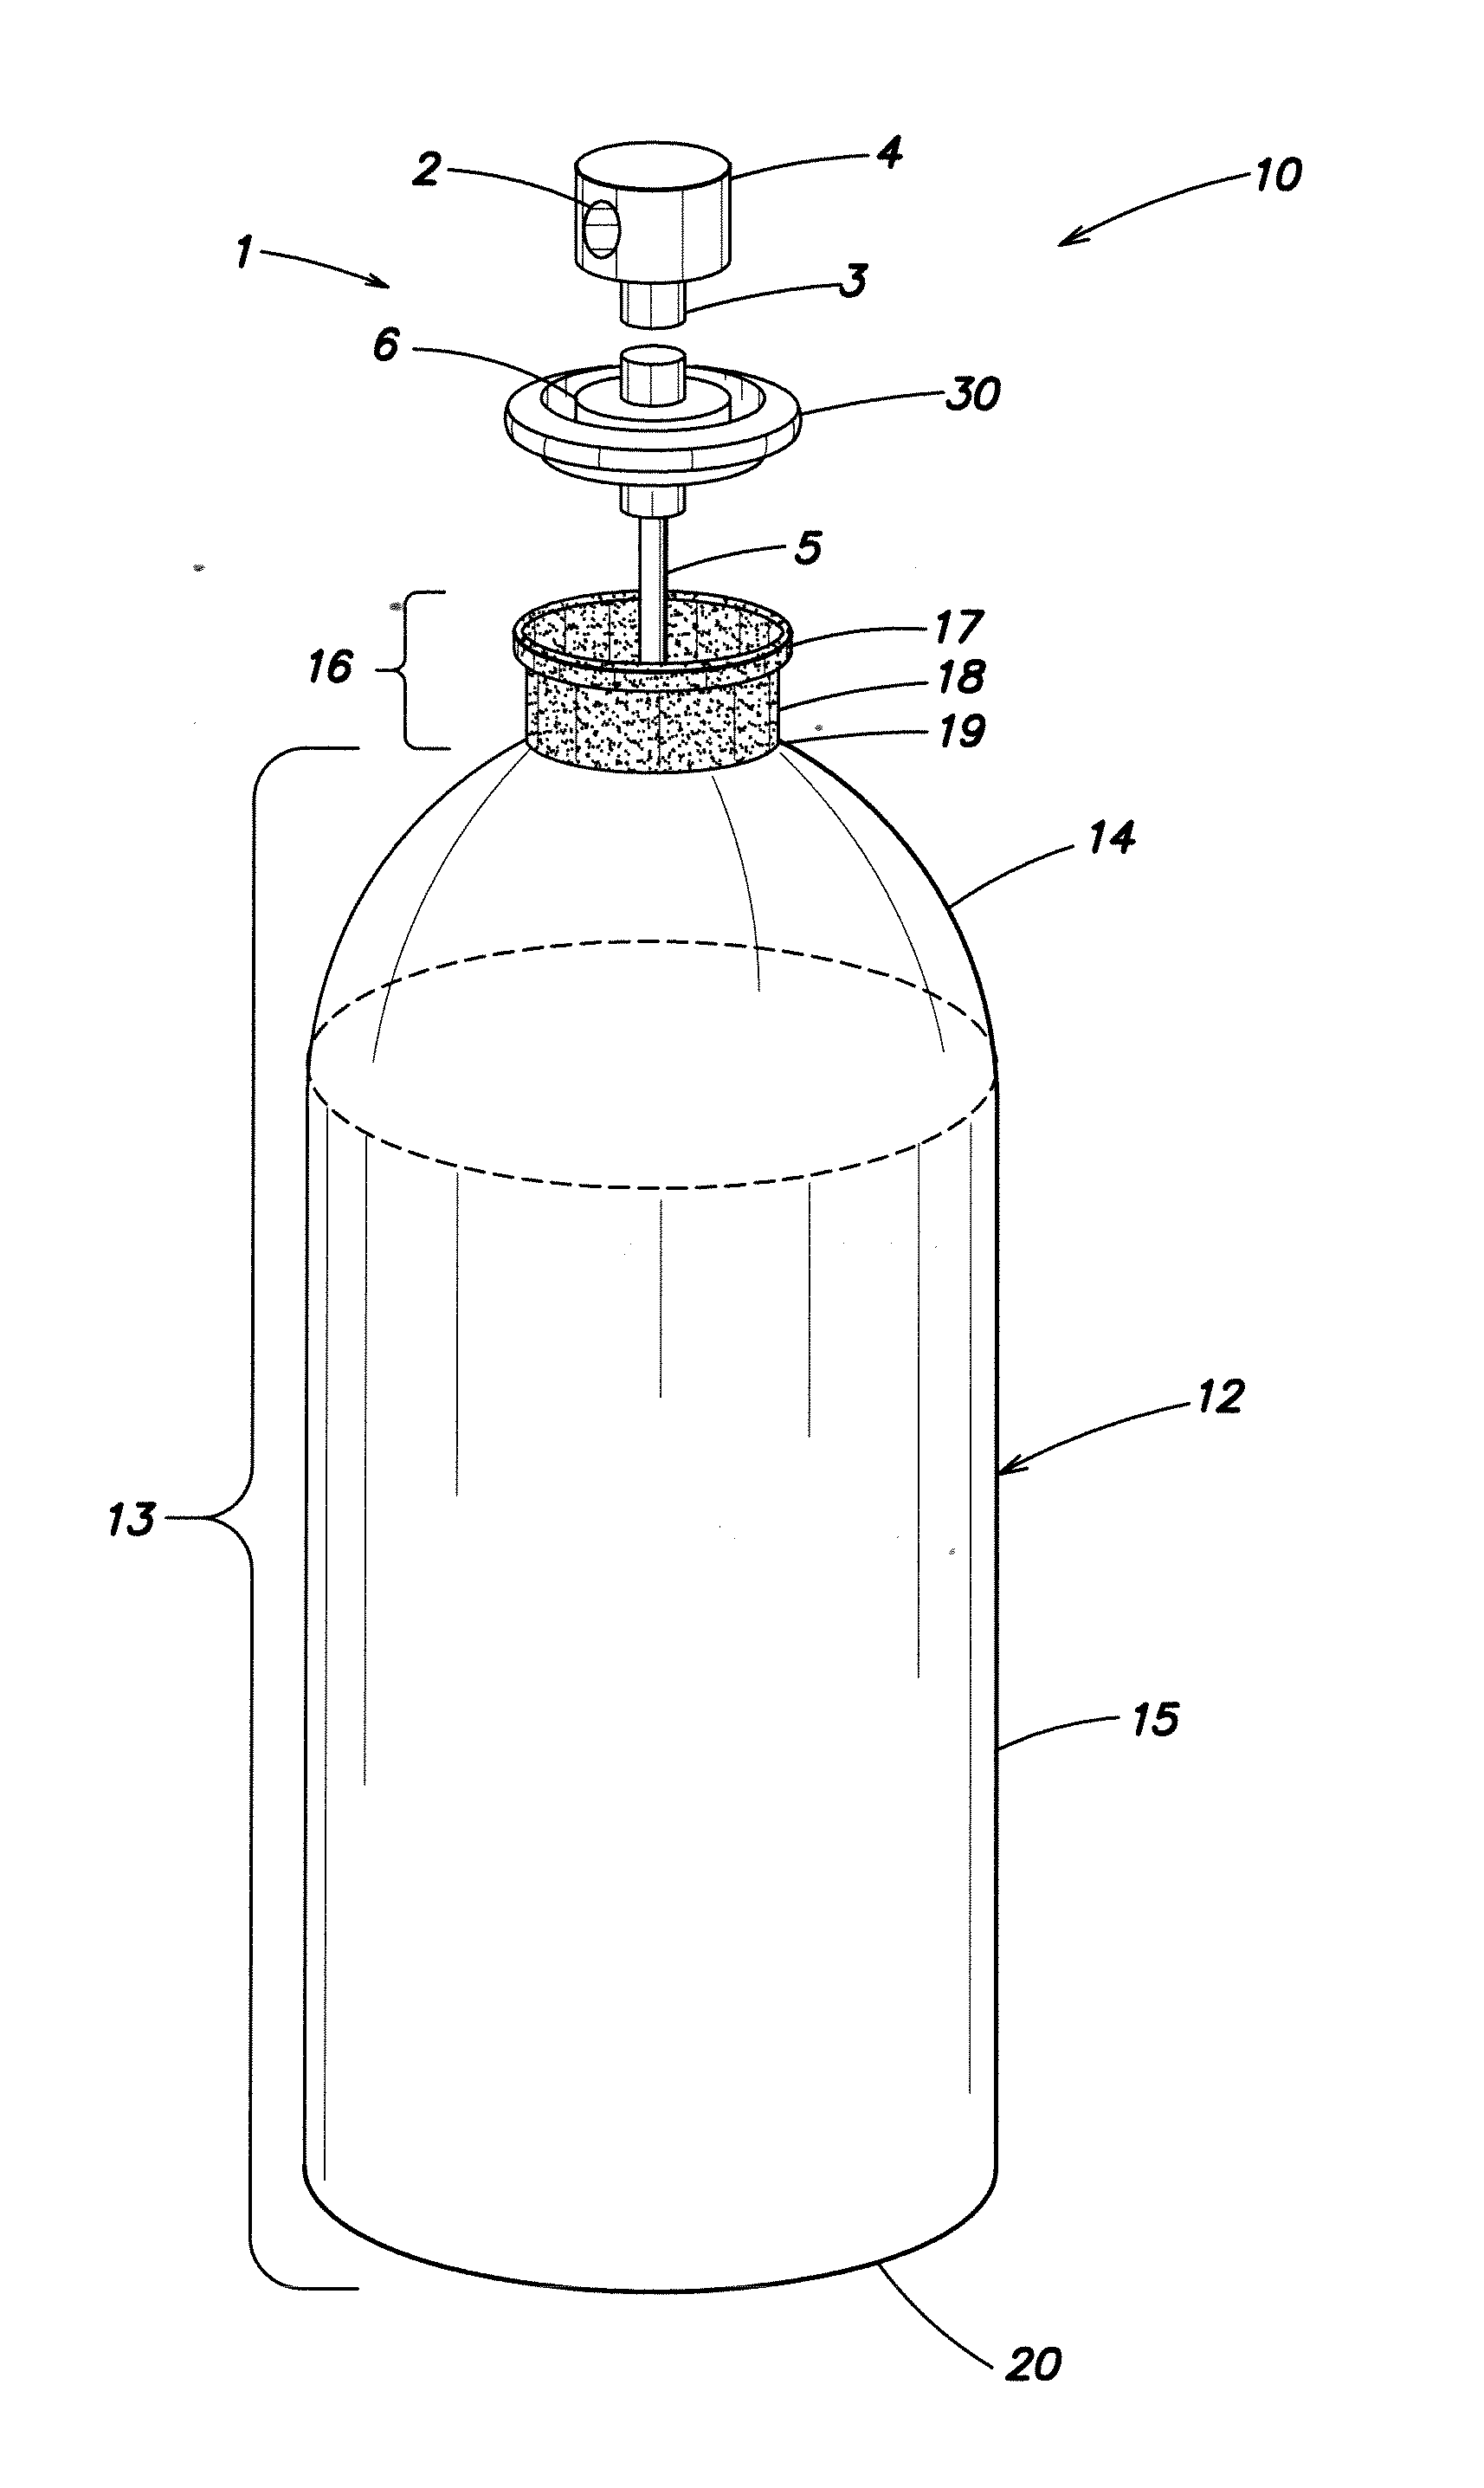 Plastic aerosol container and method of manufacture